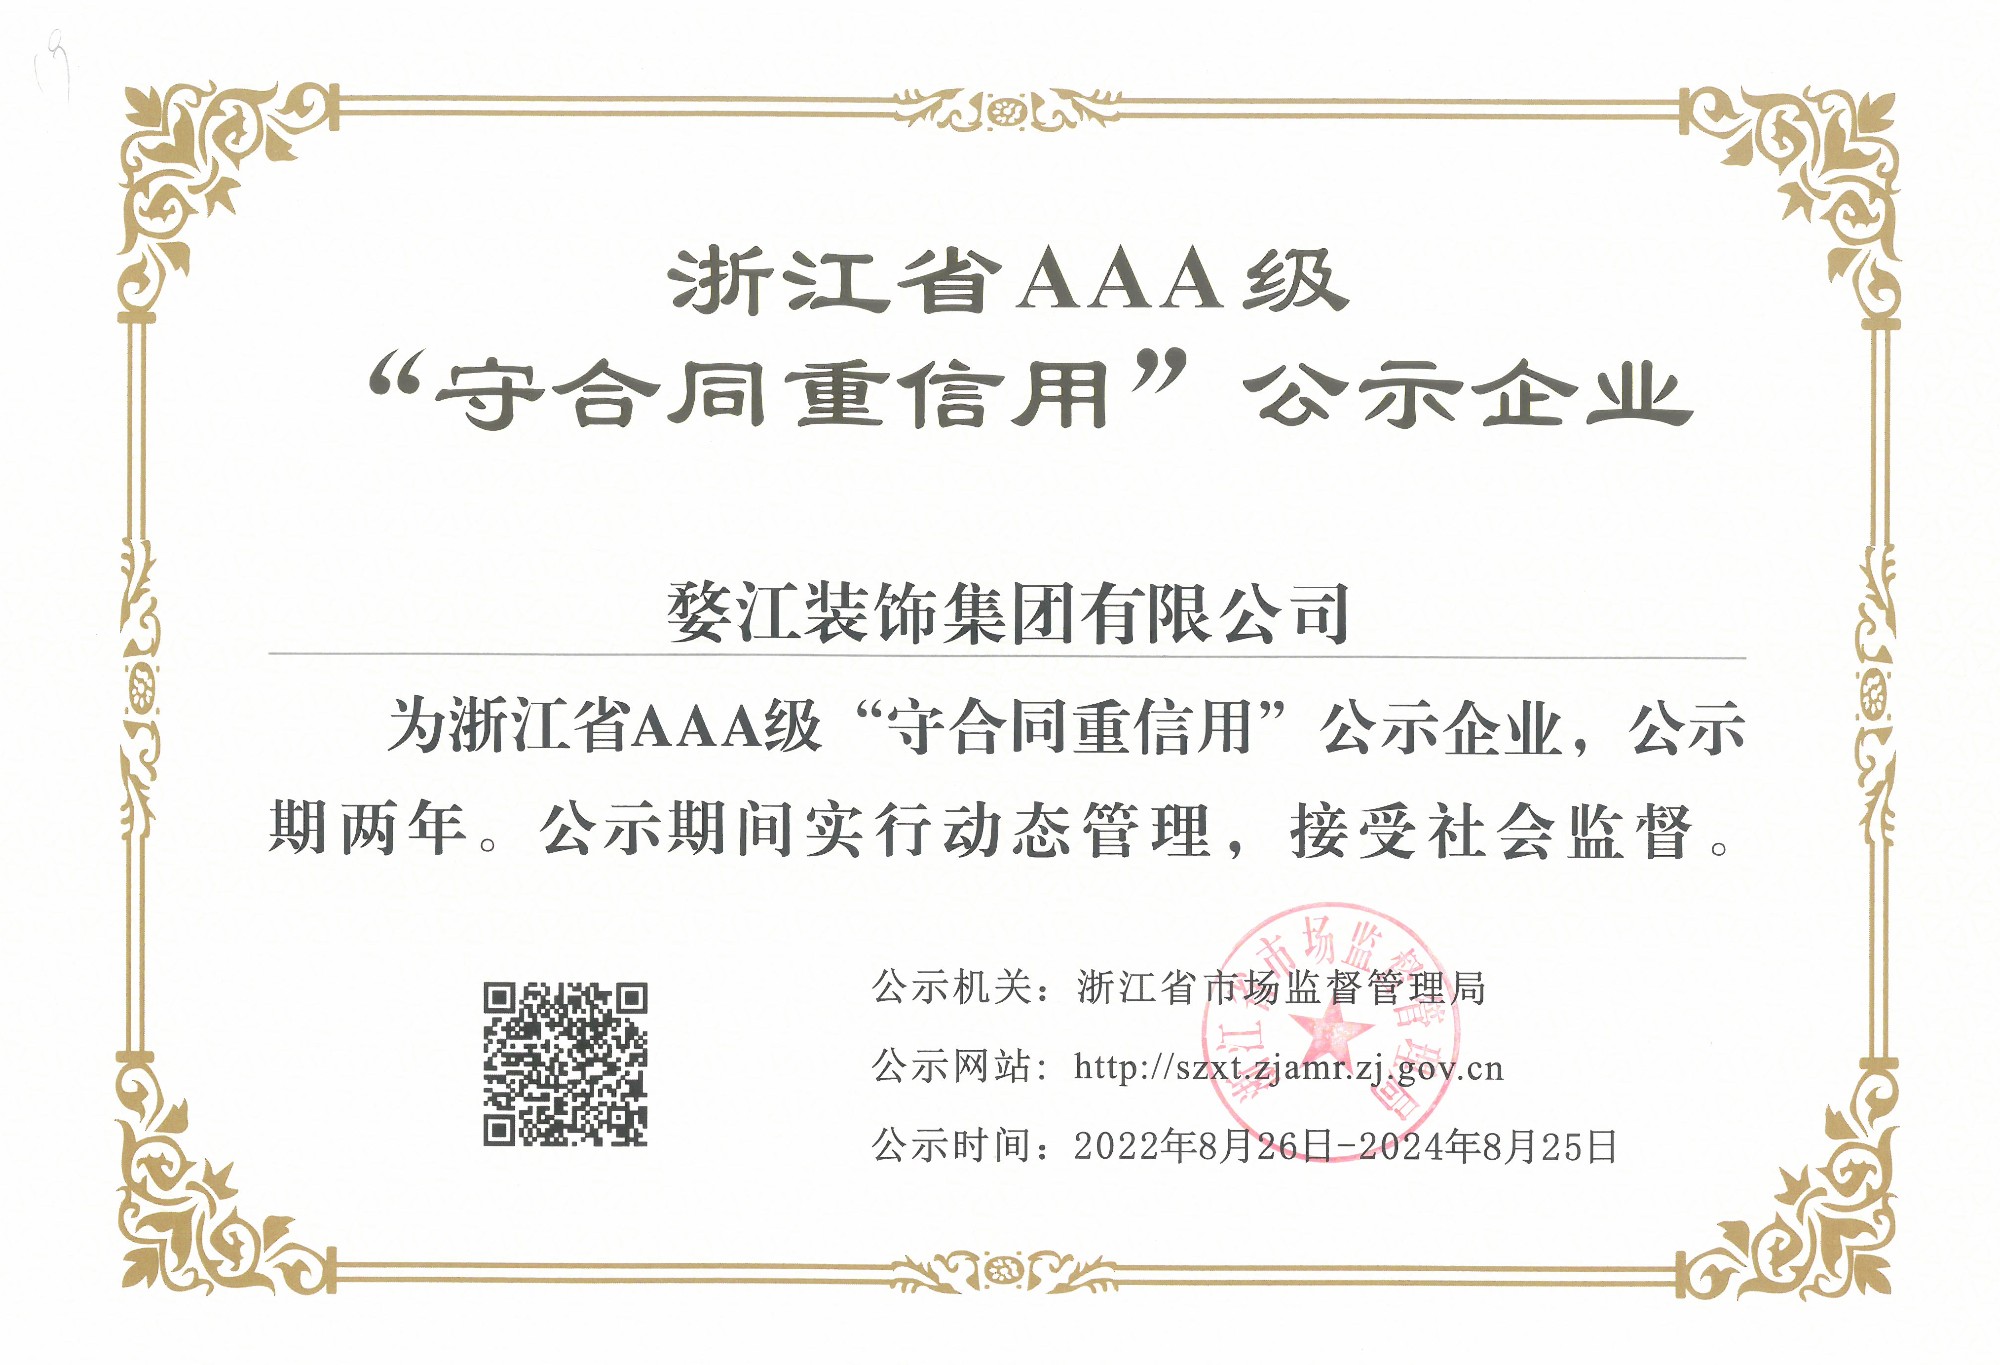 集团荣获浙江省AAA级“守合同重信用”企业称号